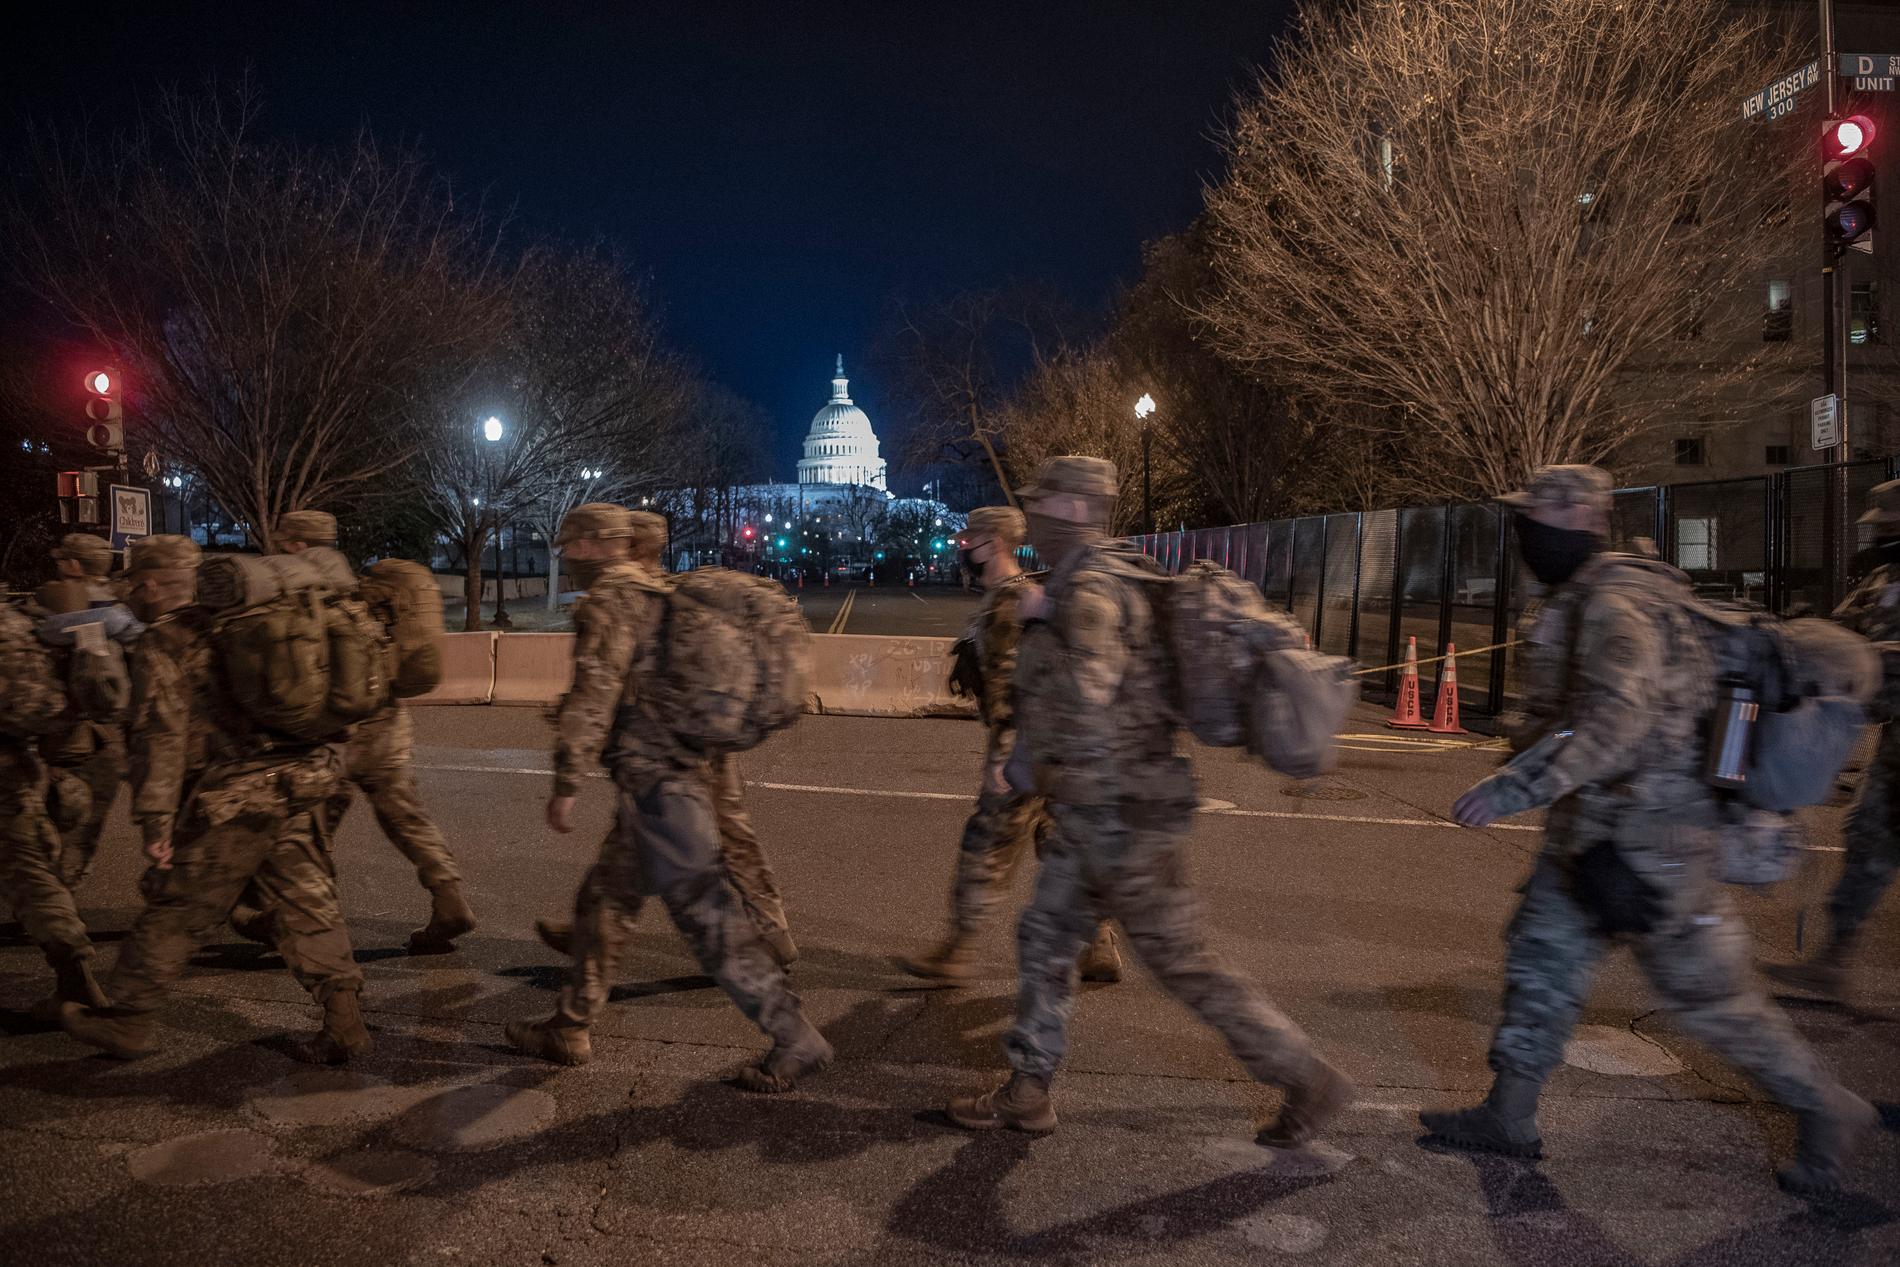 Joe Biden svärs in som president. Washington D.C. är avstängt flera kvarter runt Kapitolium. 25 000 militärer och 10 000 FBI-agenter säkrar området.